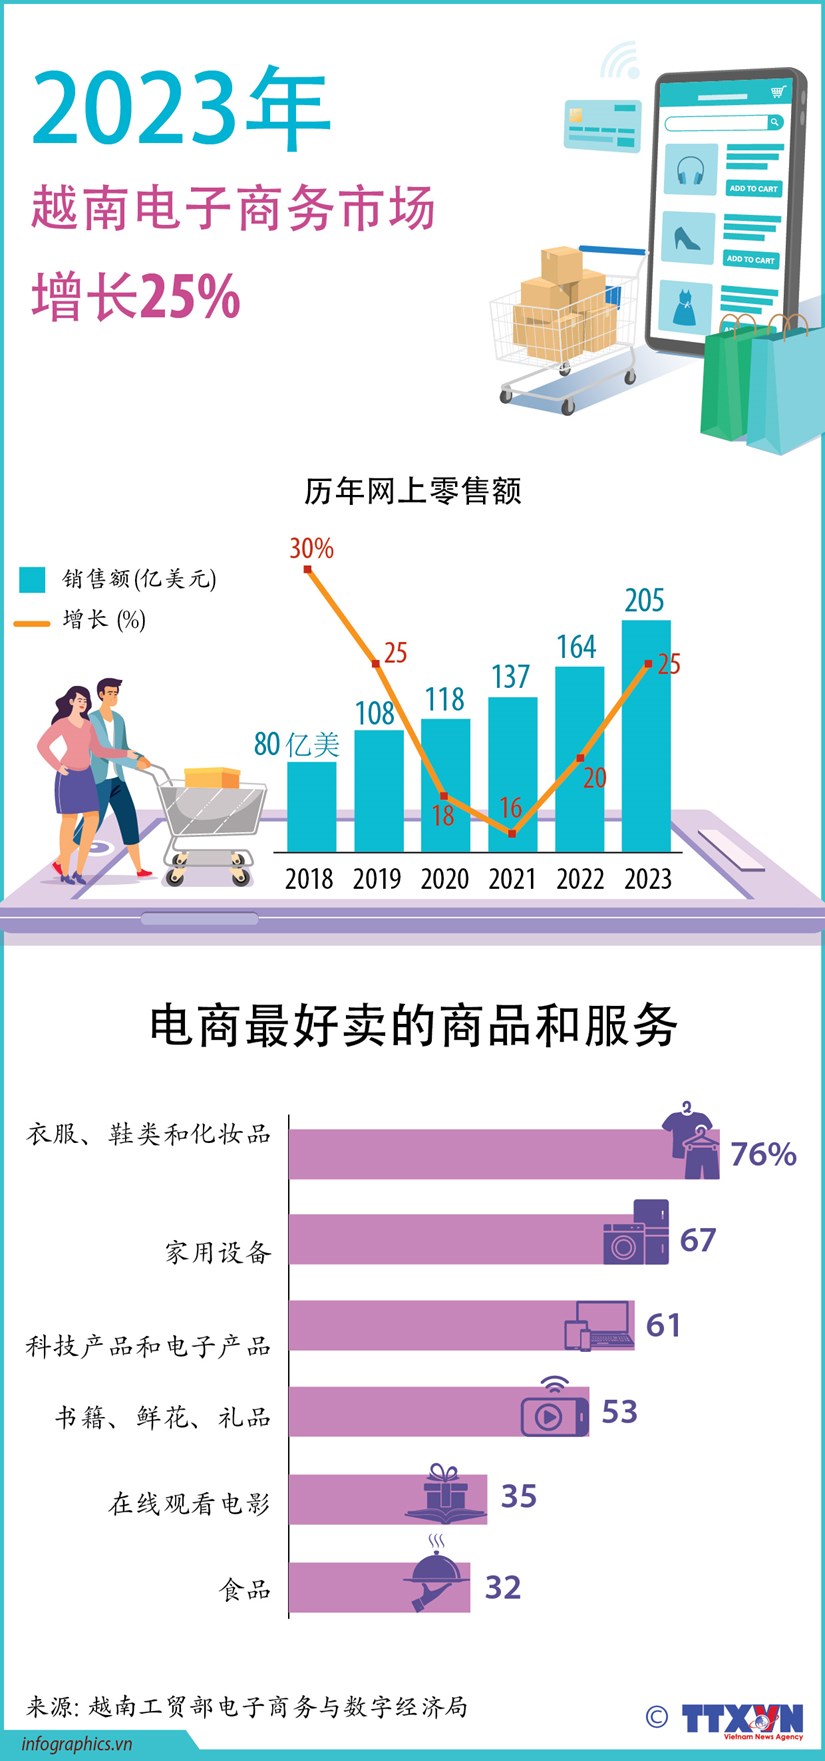 图表新闻：2023年越南电子商务市场增长25% hinh anh 1